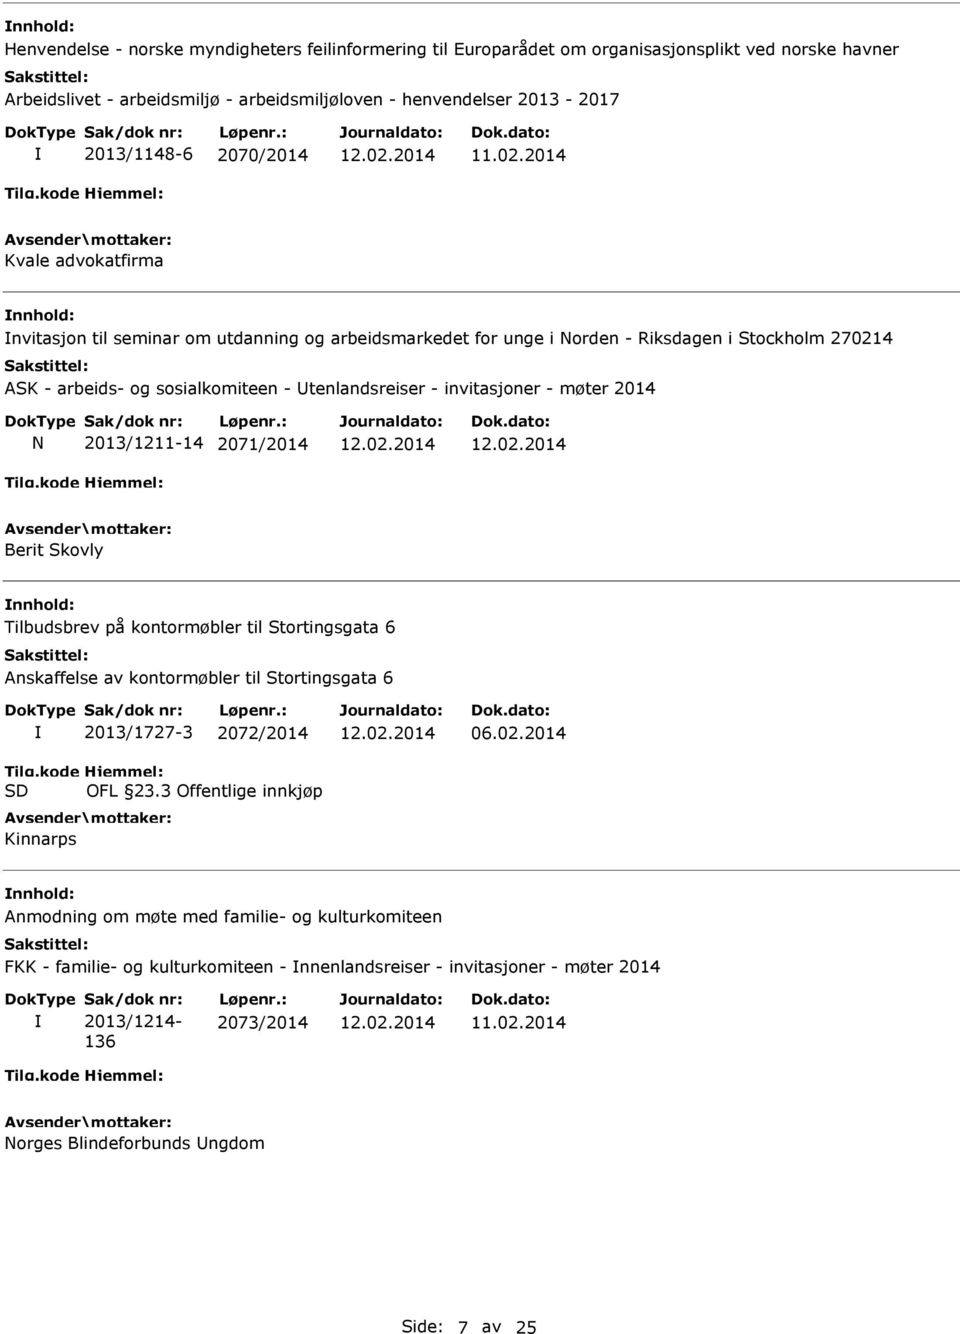 møter 2014 N 2013/1211-14 2071/2014 Berit Skovly Tilbudsbrev på kontormøbler til Stortingsgata 6 Anskaffelse av kontormøbler til Stortingsgata 6 2013/1727-3 2072/2014 OFL 23.